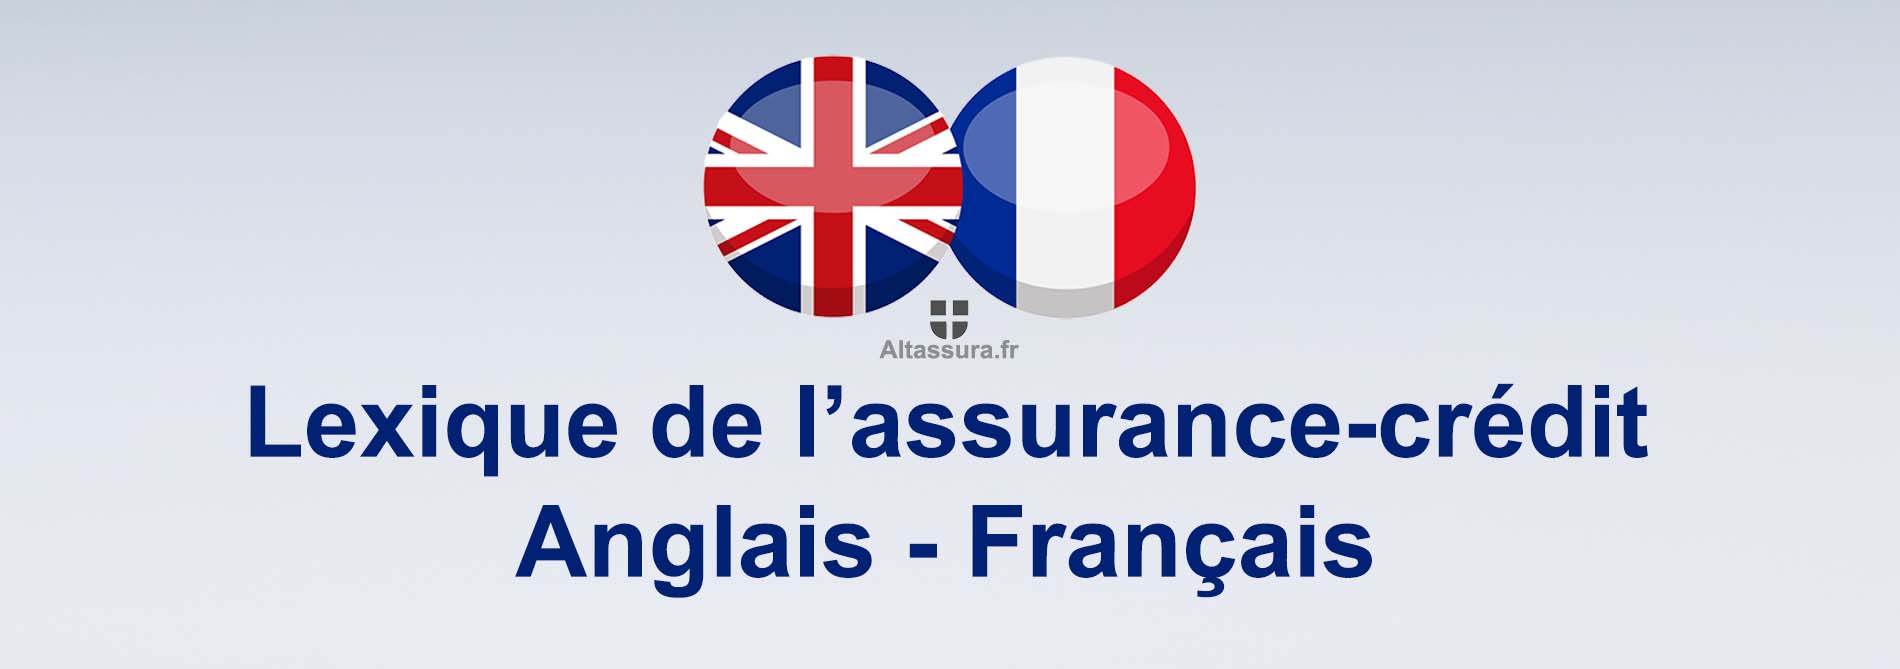 lexique de l'assurance-crédit en Anglais - Français